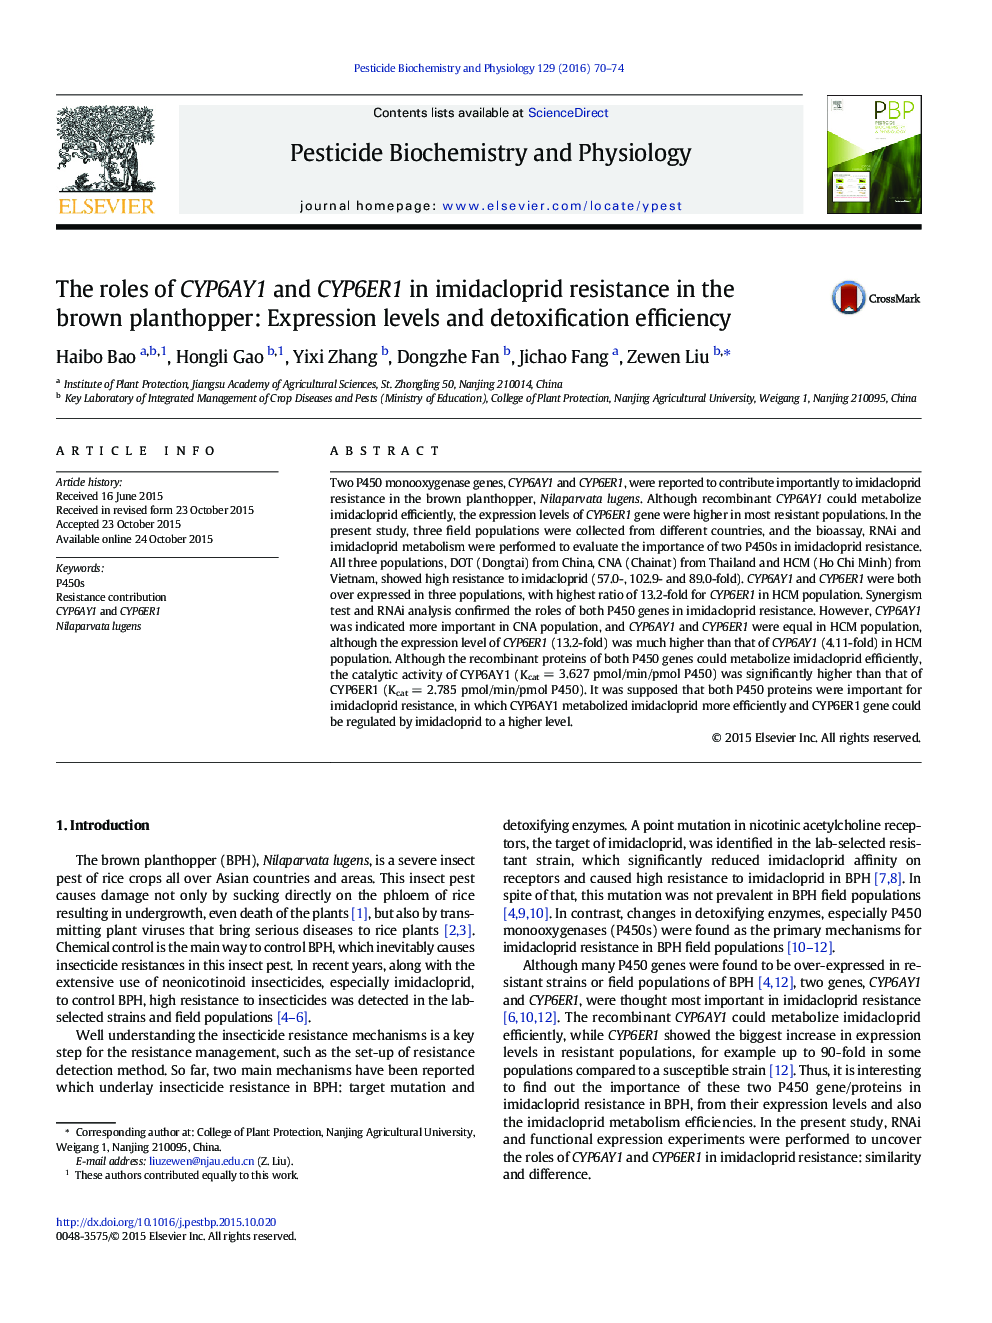 نقش های CYP6AY1 و CYP6ER1 در مقاومت ایمیداکلوپرید در ملخ قهوه ای: سطح بیان و بهره وری سم زدایی